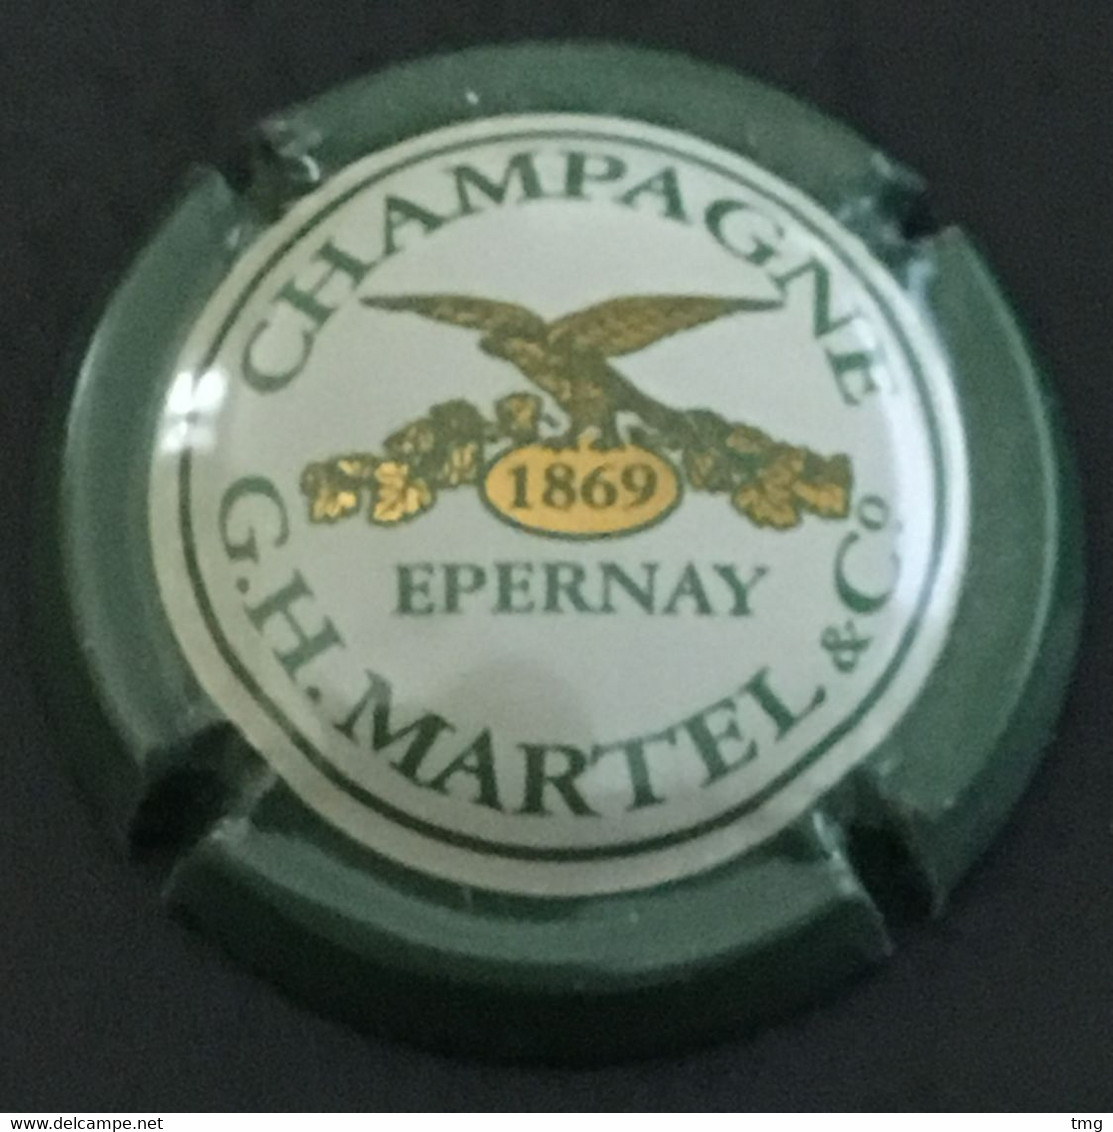 51 - Capsule De Champagne 16 - G.H. Martel H éloigné Du M, 1869 En Gros Contour Vert Clair Epernay - Martel GH